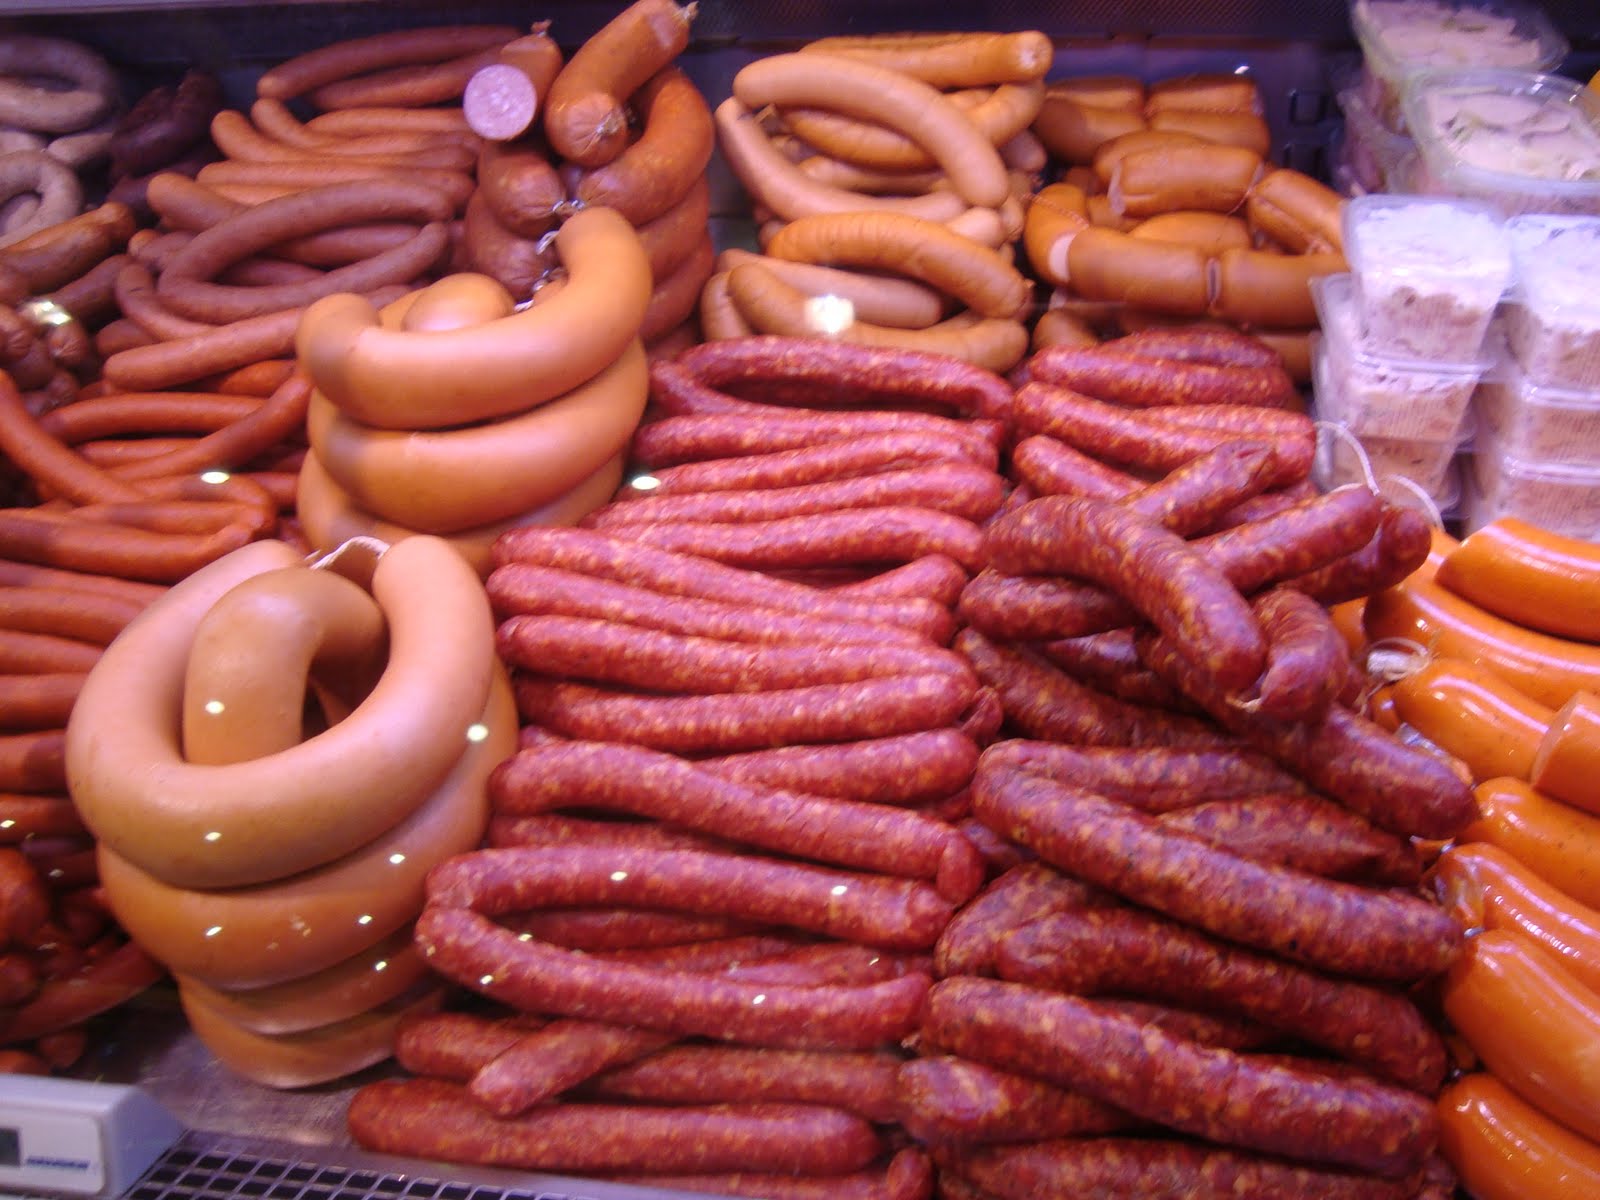 German sausage photos found on the web.